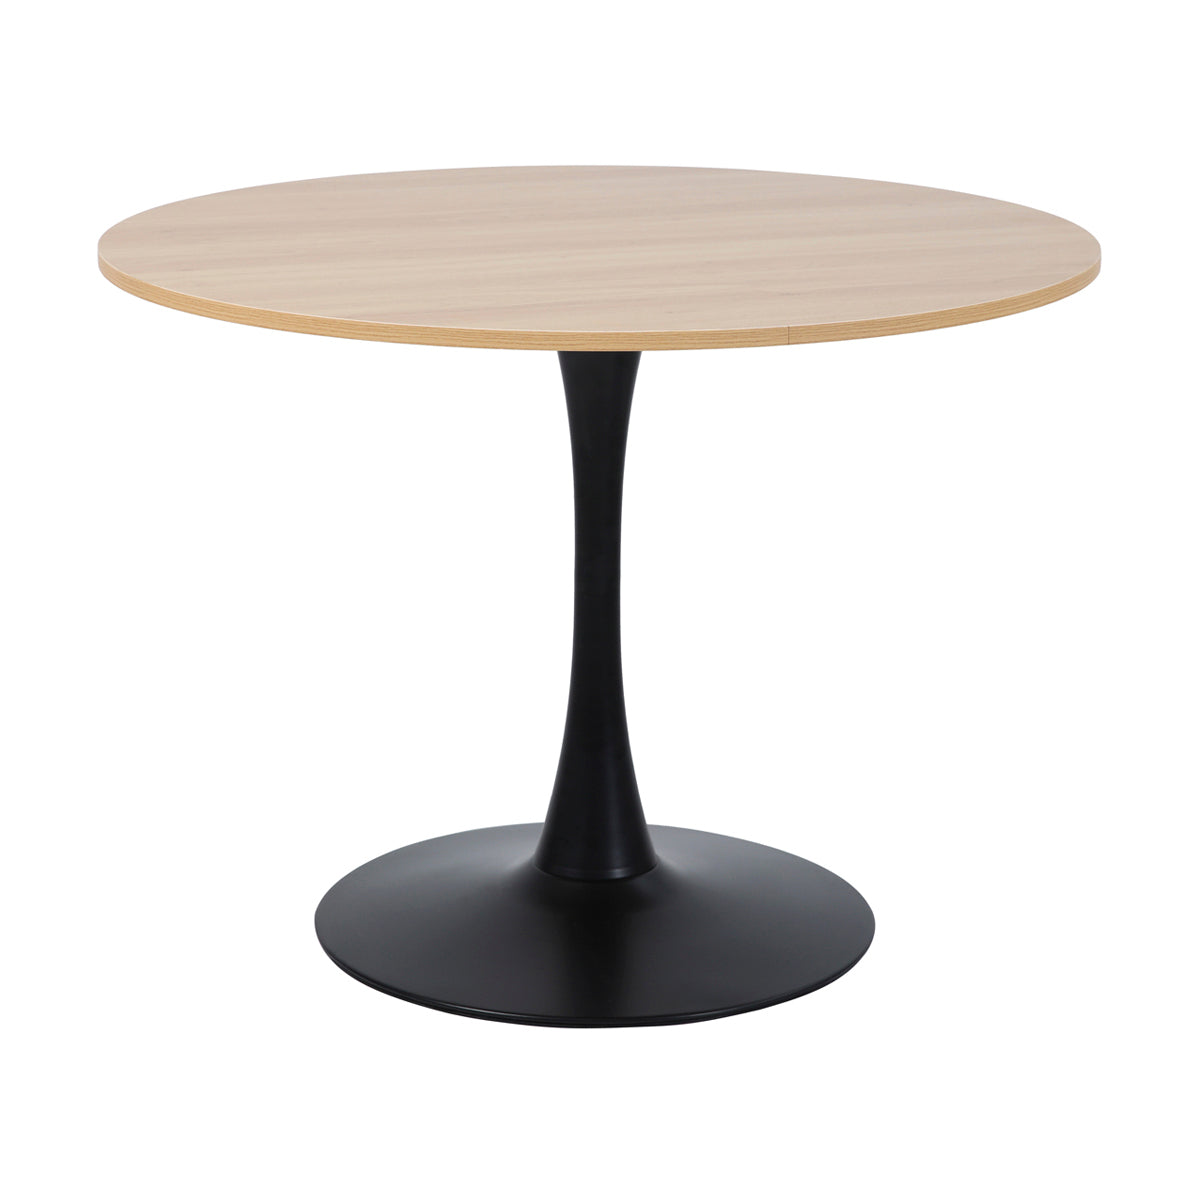 Table à manger ronde pour 4 à 5 personnes diamètre 100 cm, finition mélamine imitation chêne, base ronde en métal revêtement epoxy noir - TULIPS